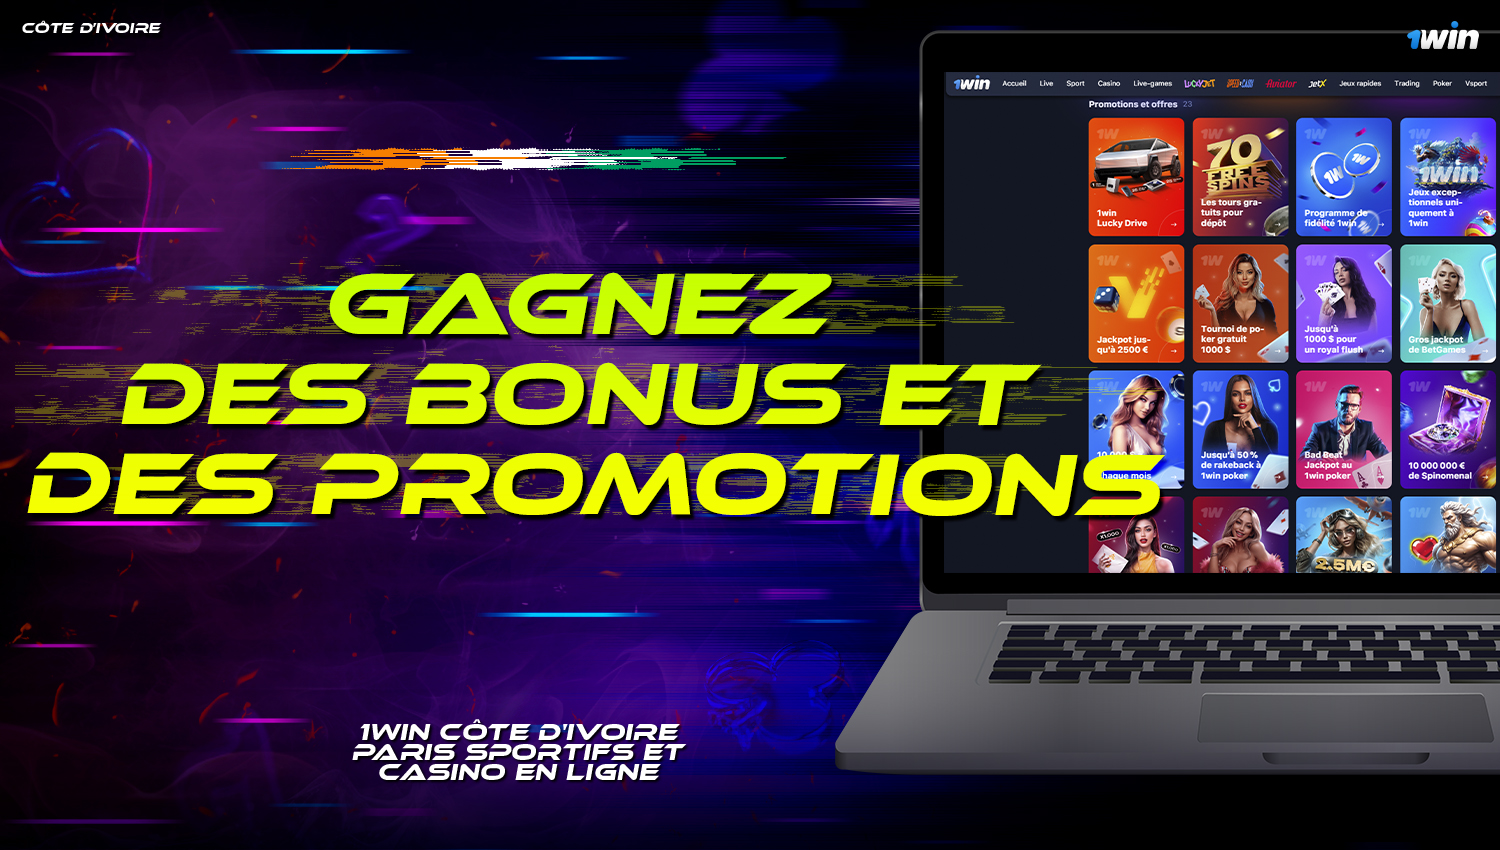 Bonus et promotions disponibles pour les utilisateurs de Côte d'Ivoire sur 1Win  